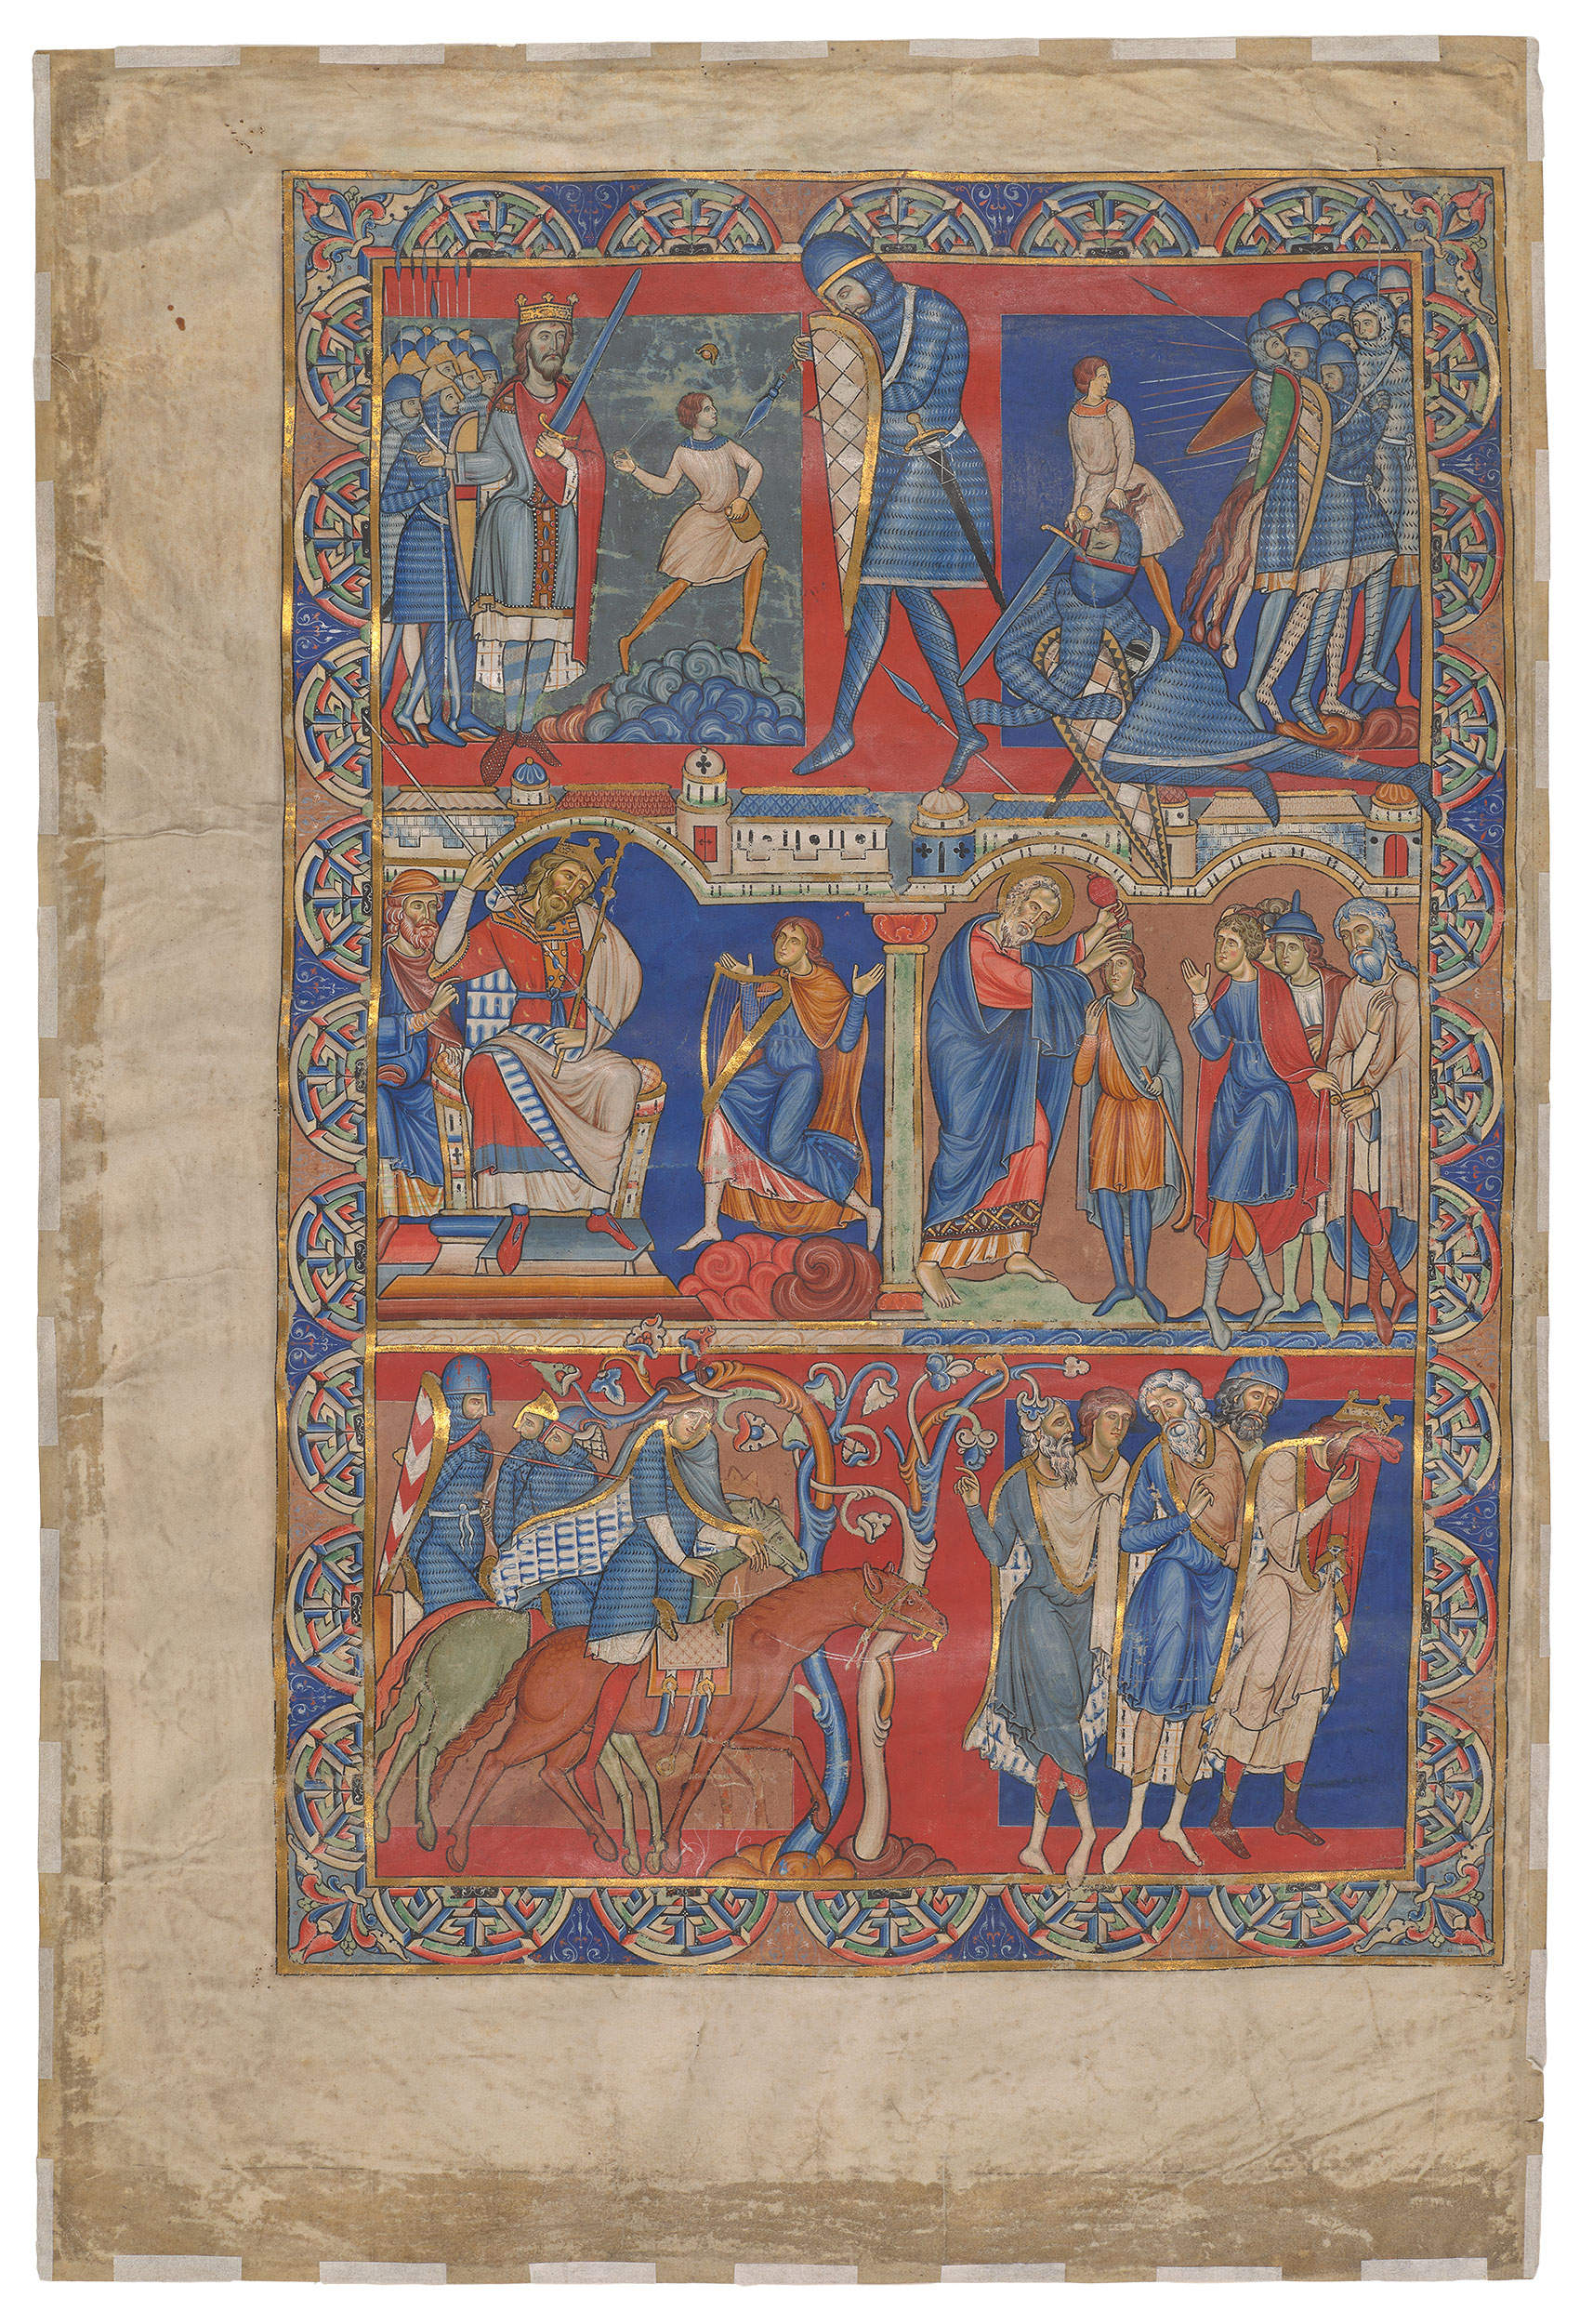 Hoja del Libro de Samuel, Biblia de Winchester by Artista anónimo  - c. 1160–1180 - 580 x 390 mm Biblioteca y Museo Morgan